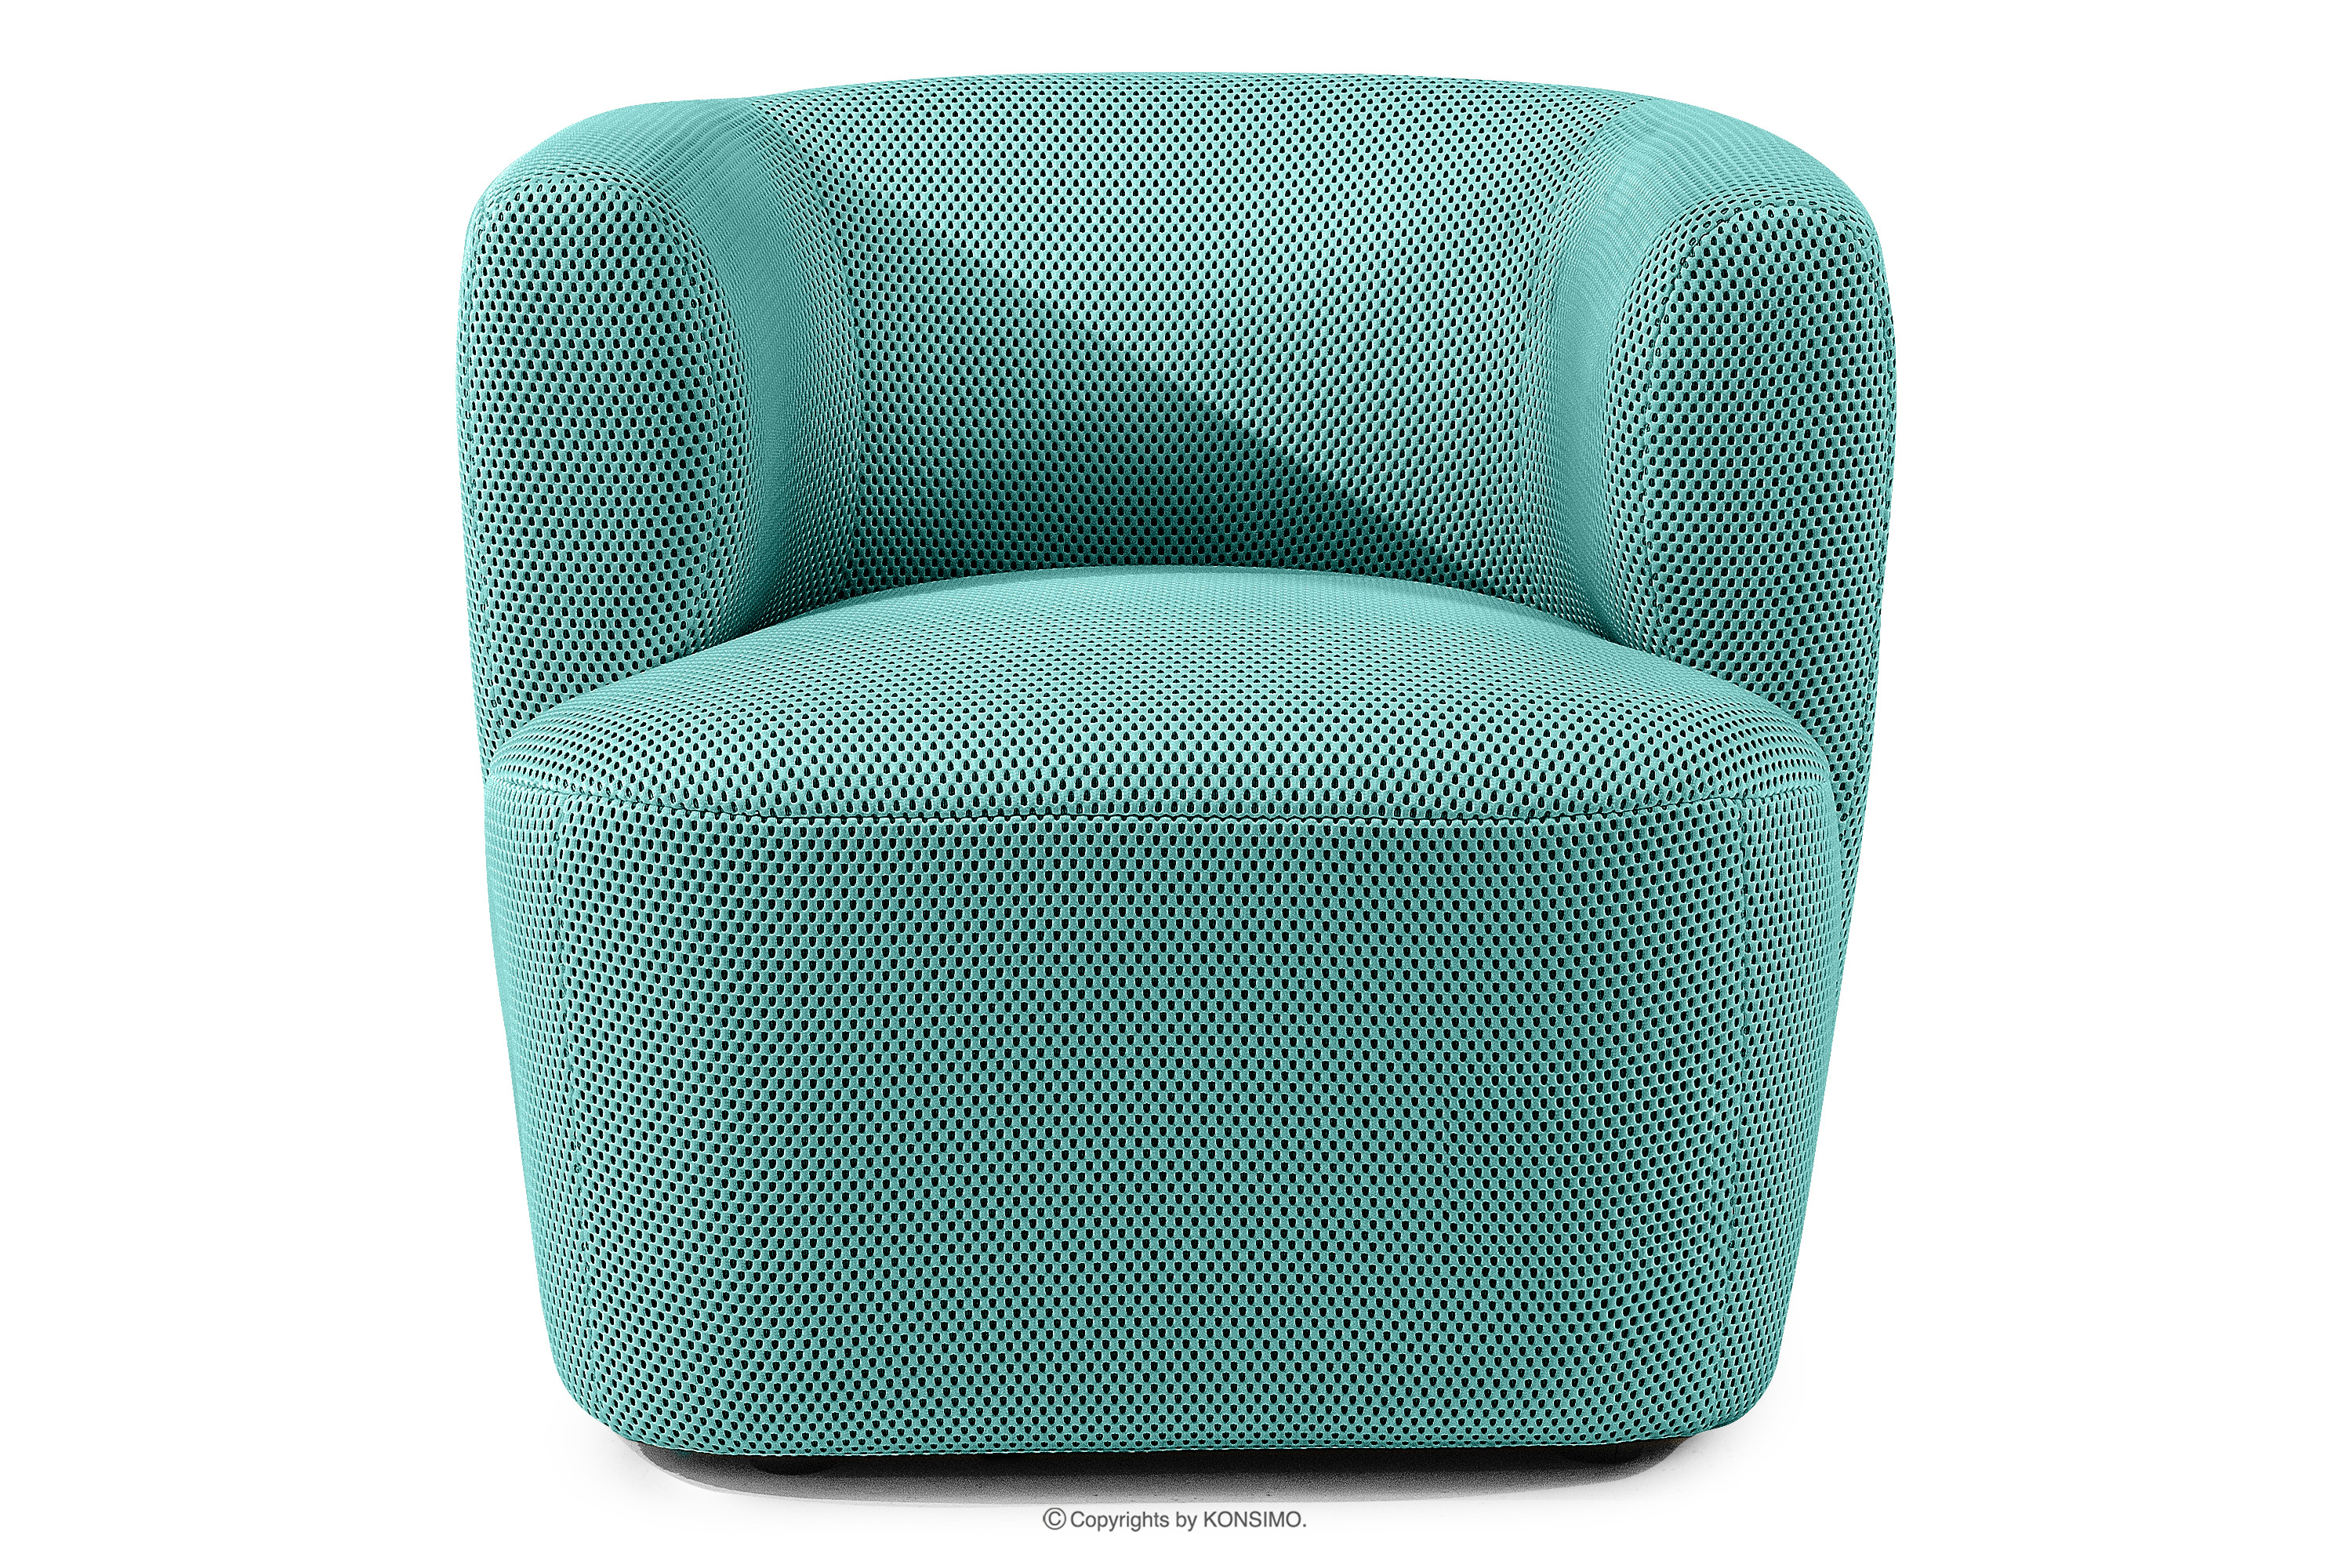 Nowoczesny fotel w tkaninie trójwymiarowej turkusowy